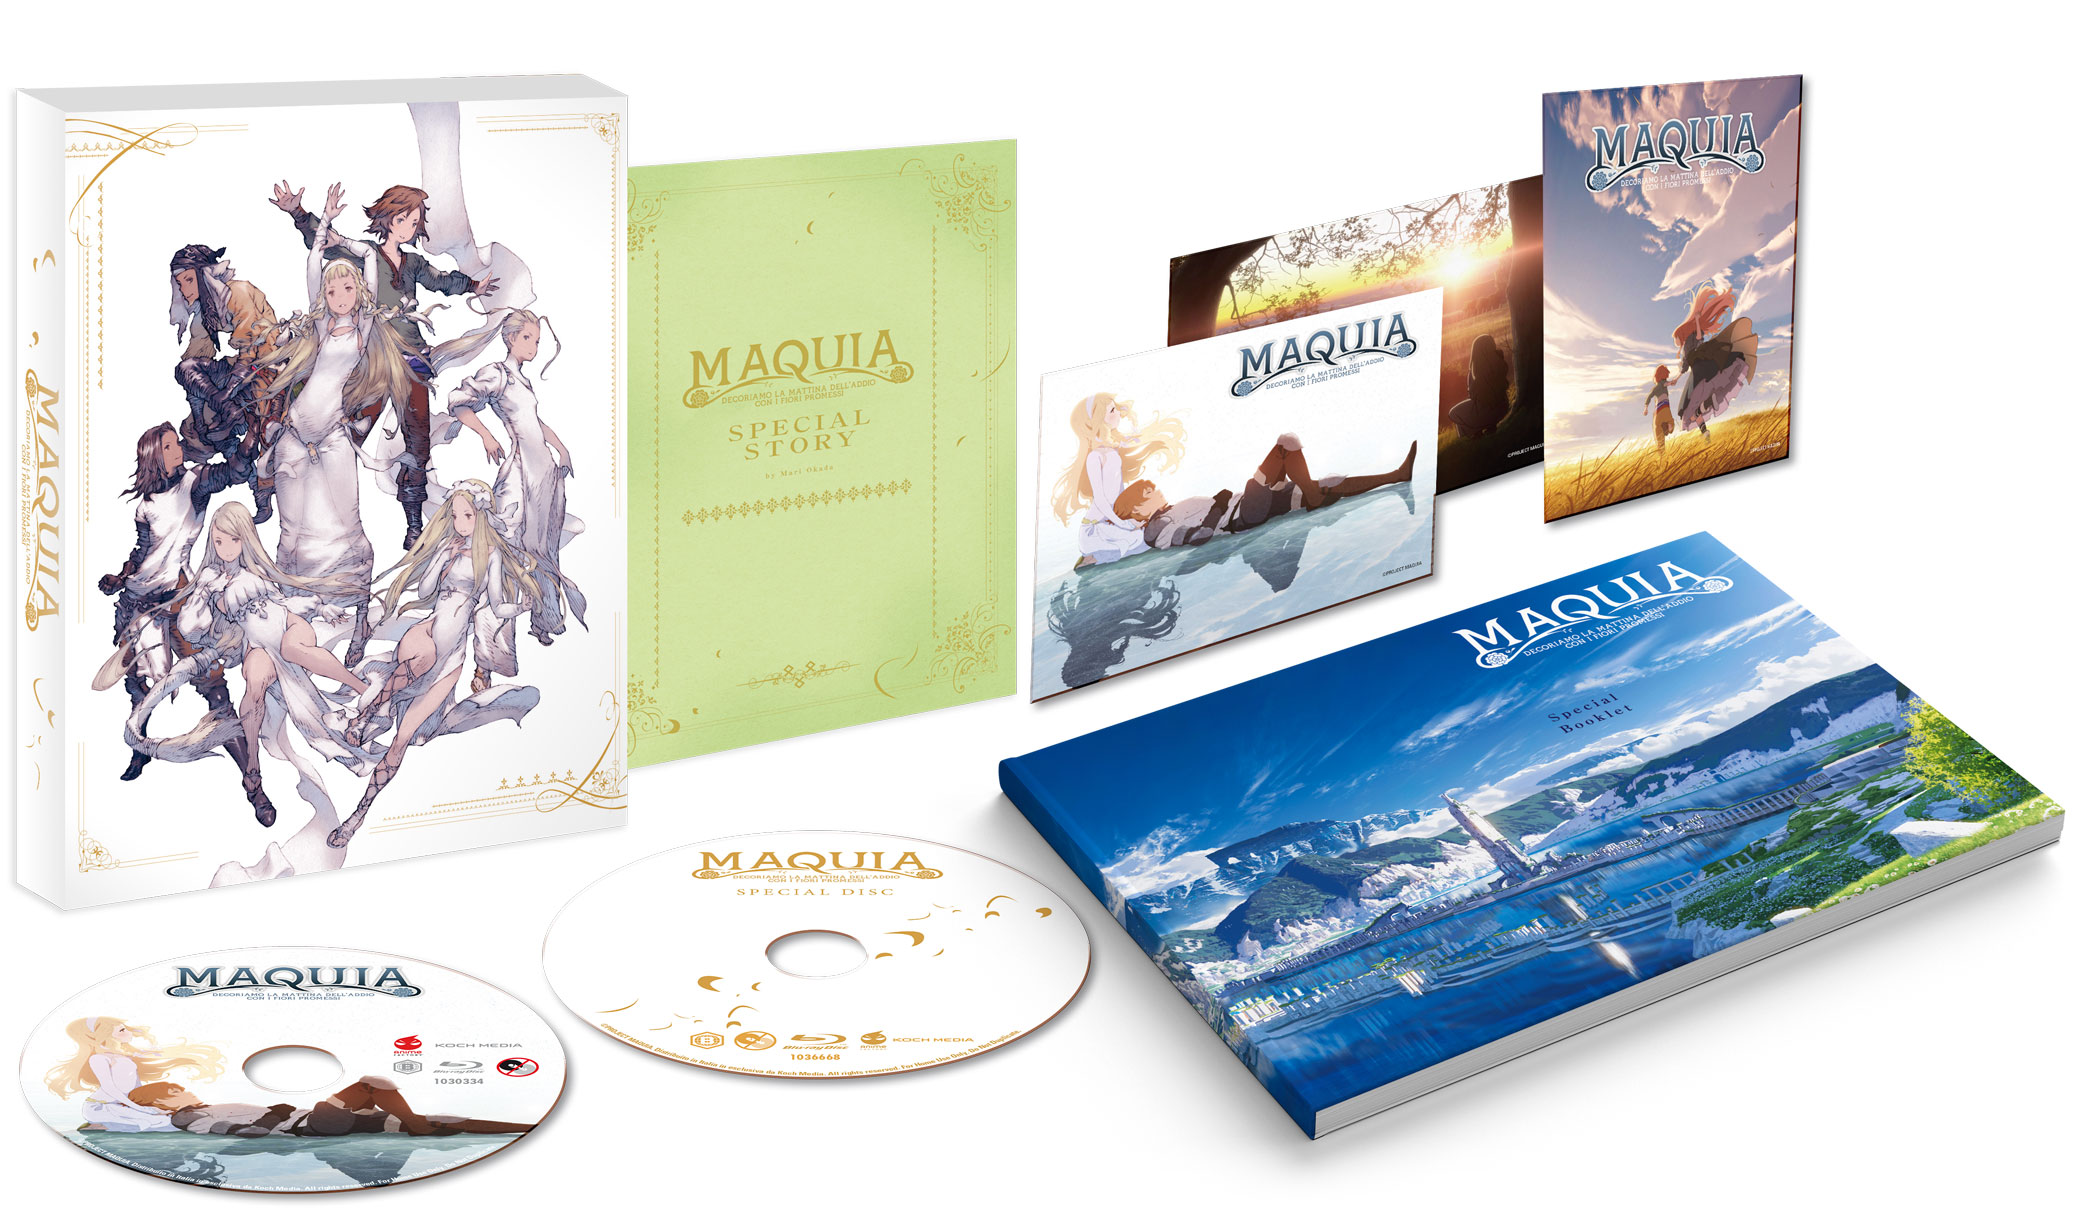 Maquia in DVD e Blu-ray